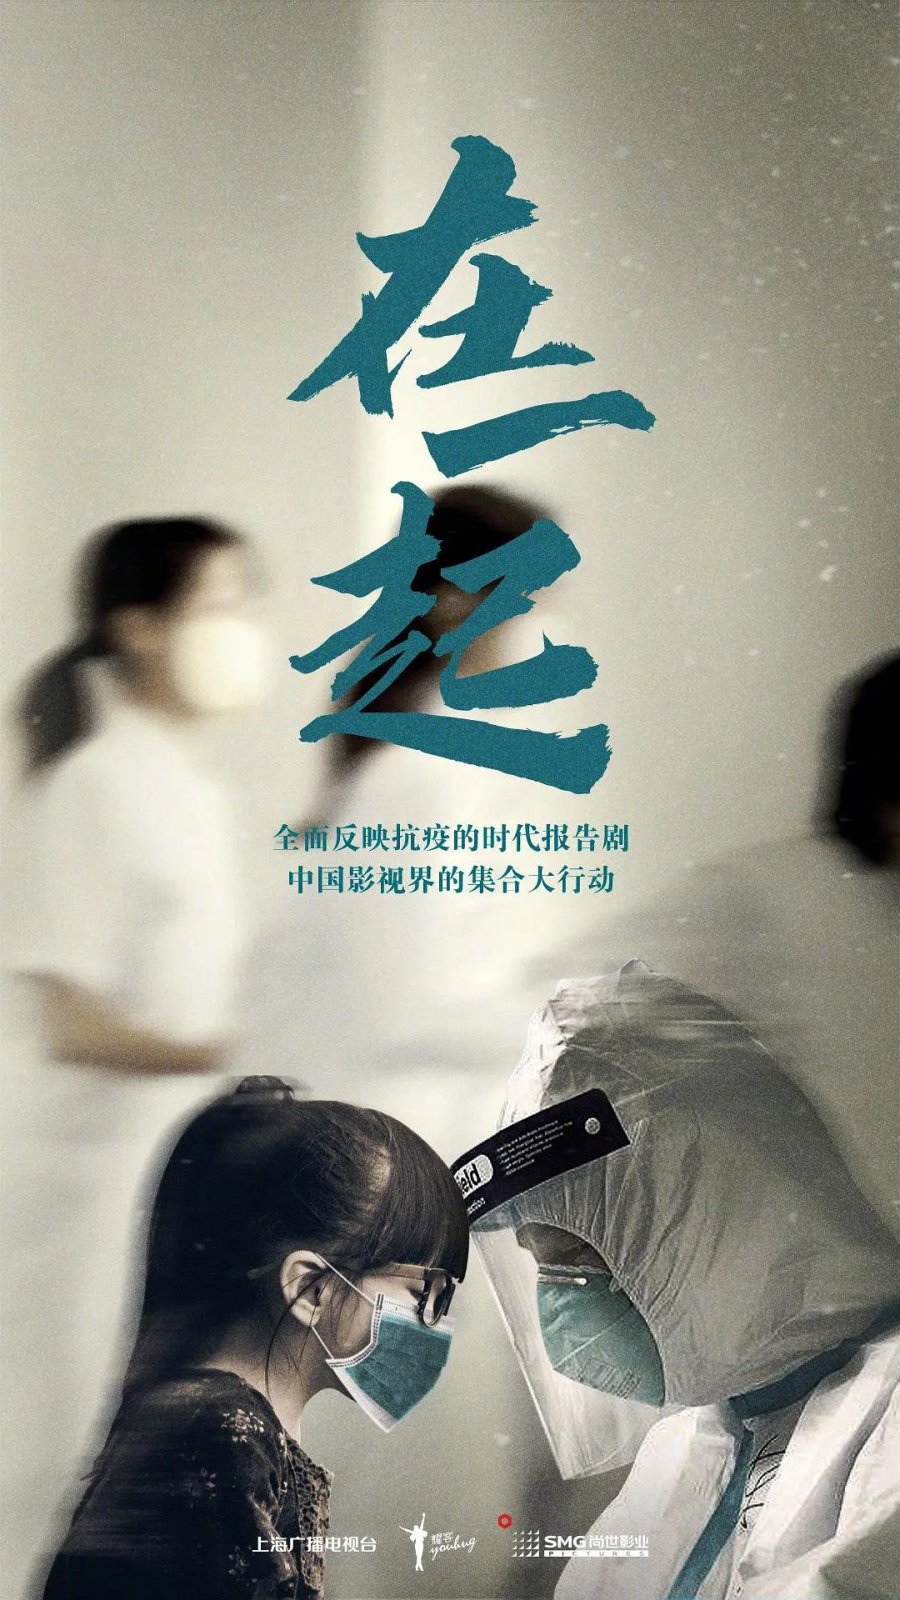 Poster Phim Cùng Nhau (Together)